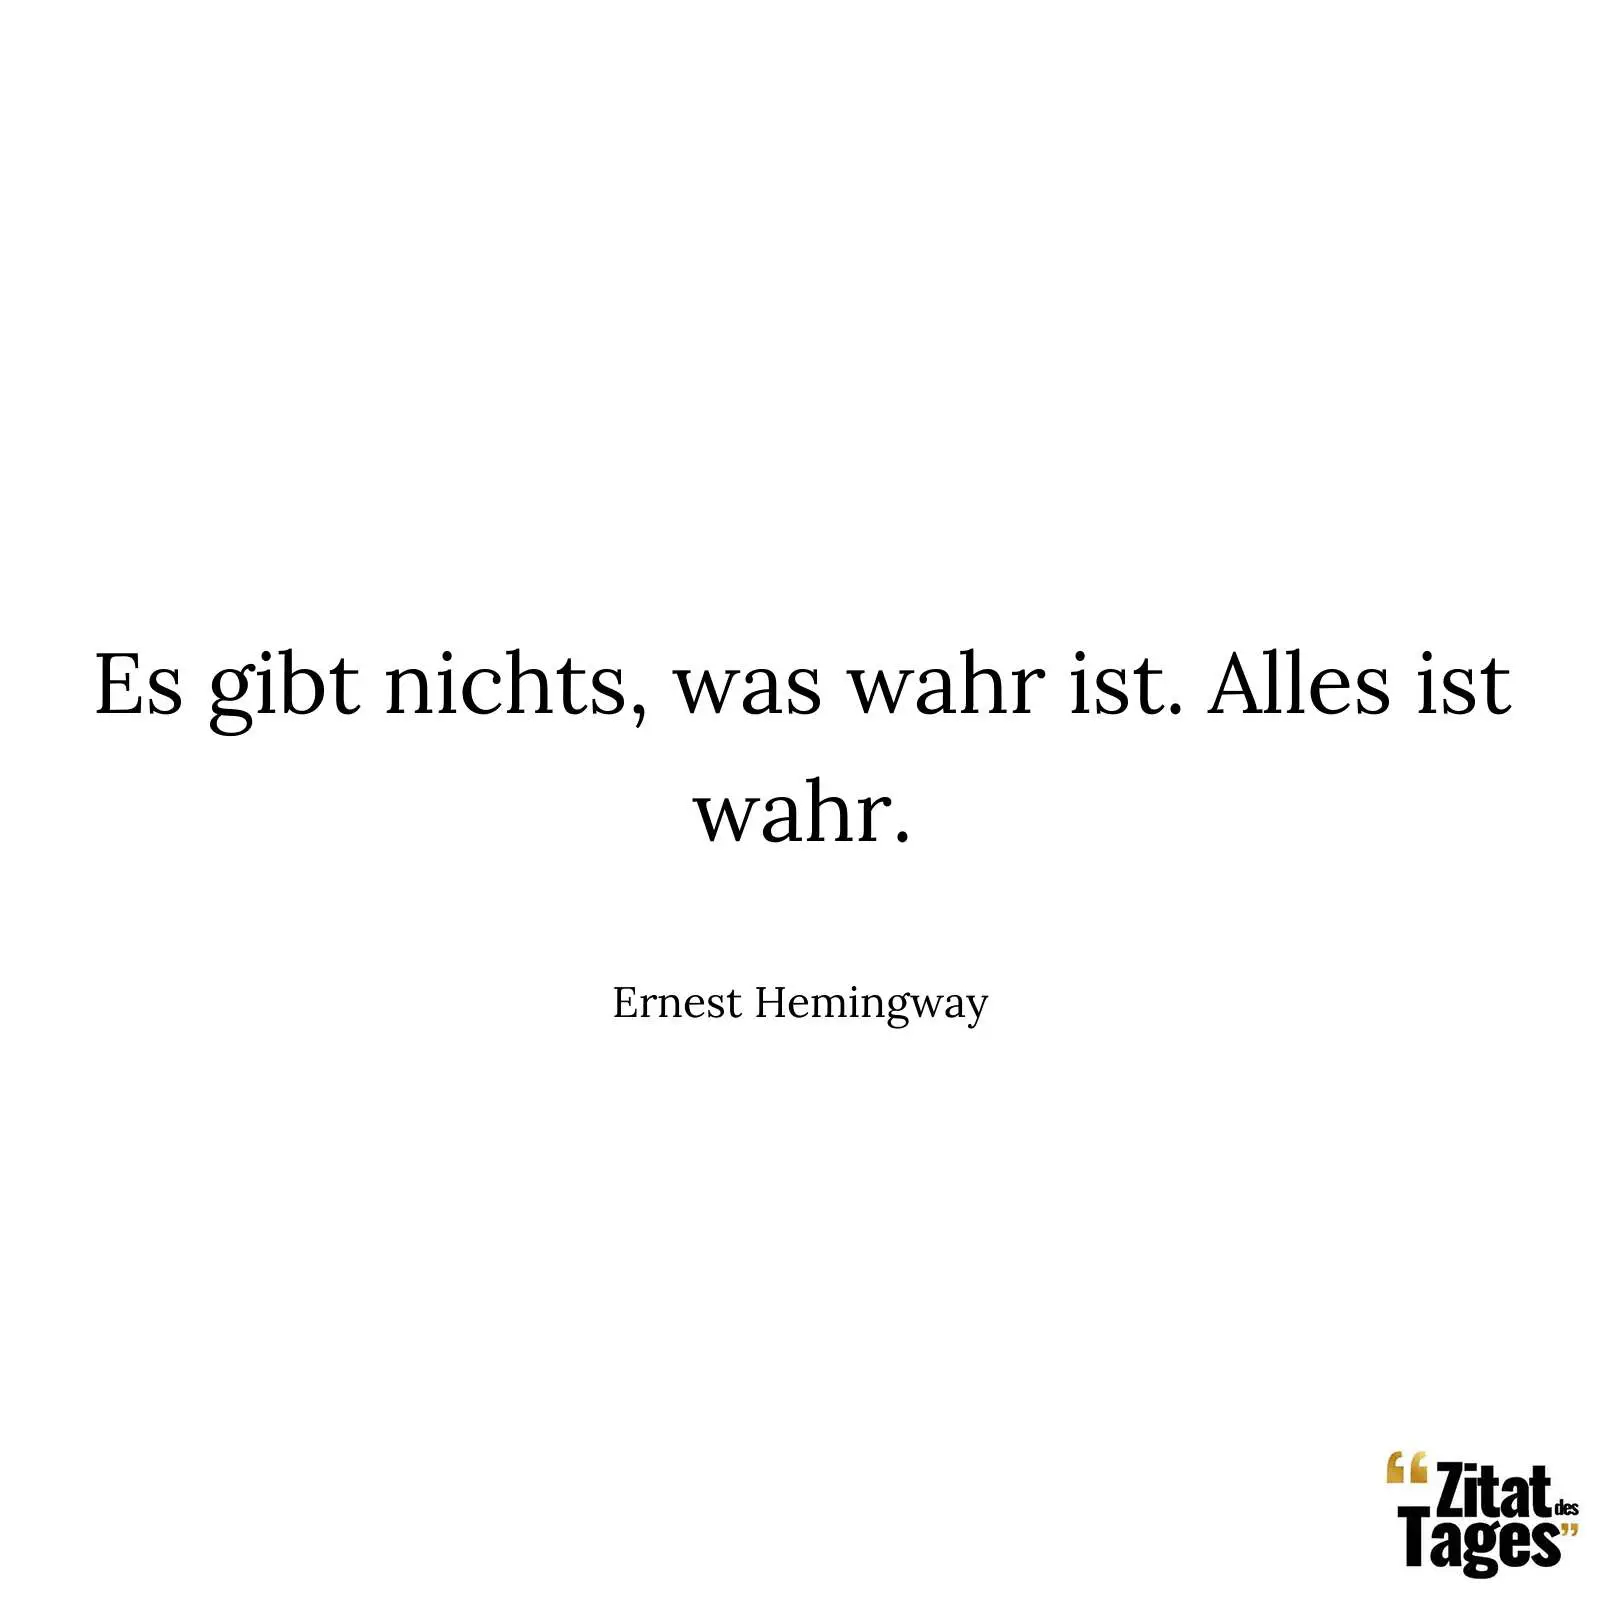 Es gibt nichts, was wahr ist. Alles ist wahr. - Ernest Hemingway